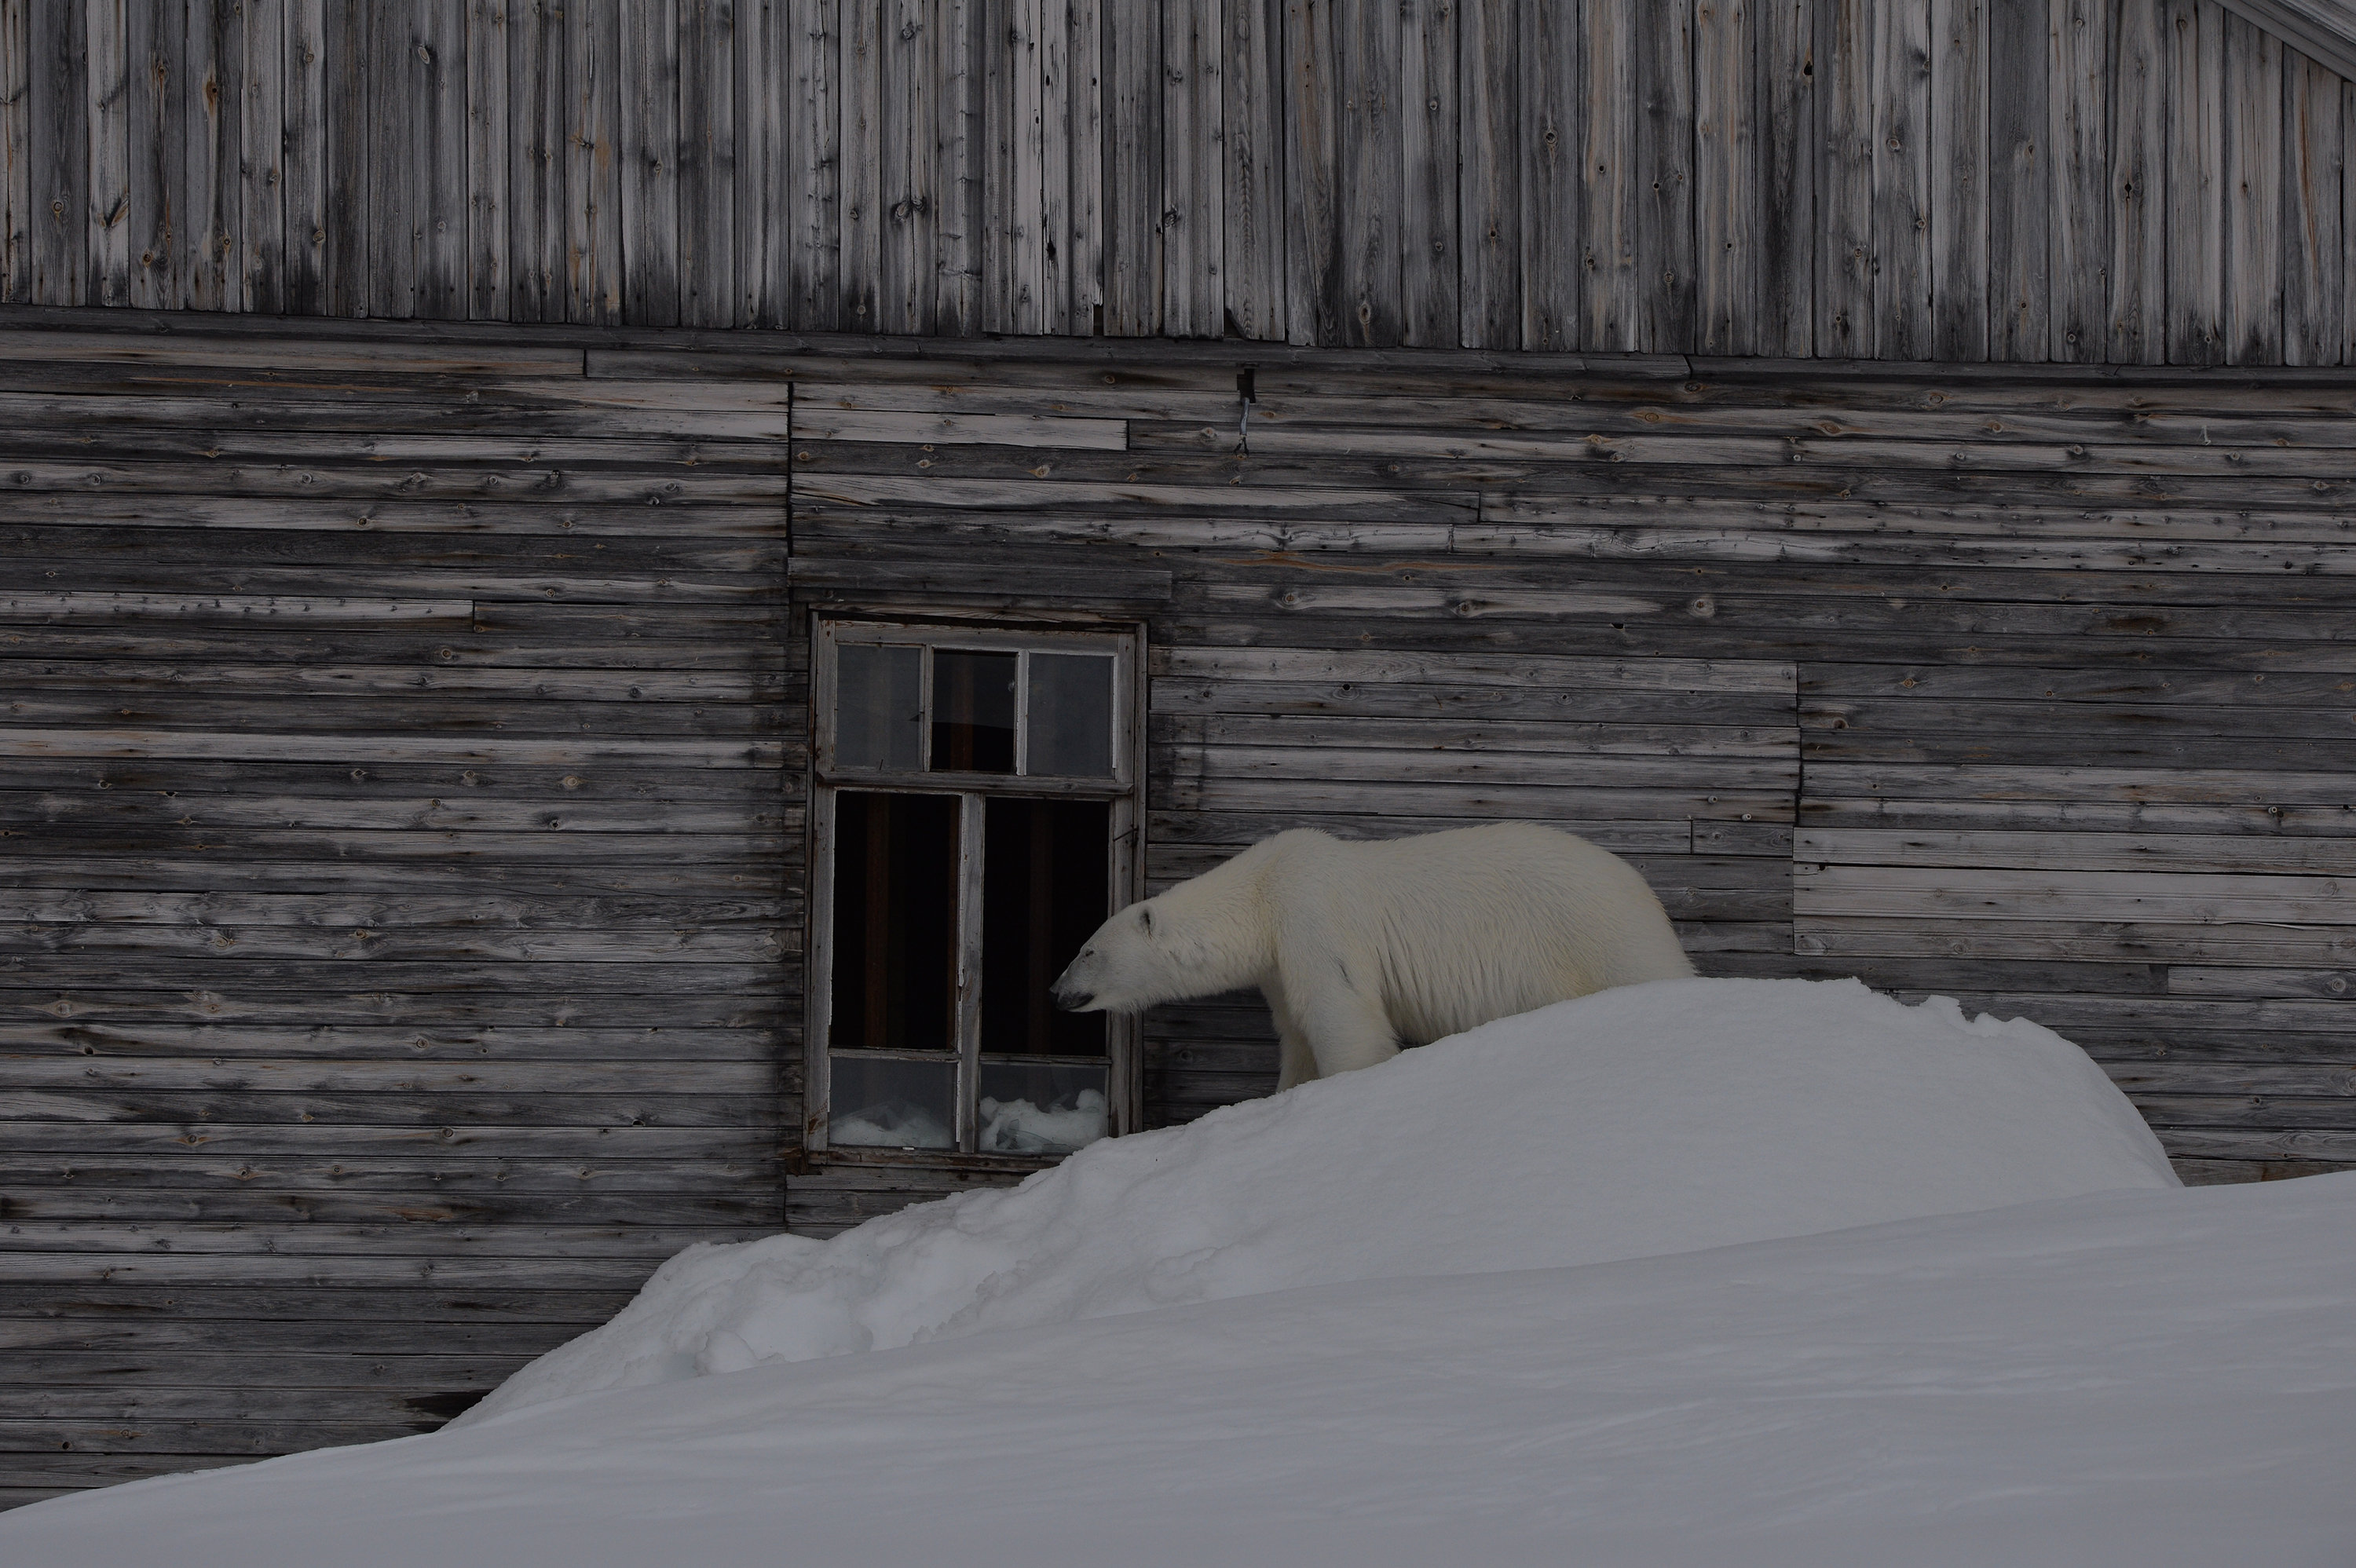 Белый медведь заглядывает в окно одного из зданий на полярной станции, остров Гукера, Земля Франца-Иосифа, национальный парк «Русская Арктика»